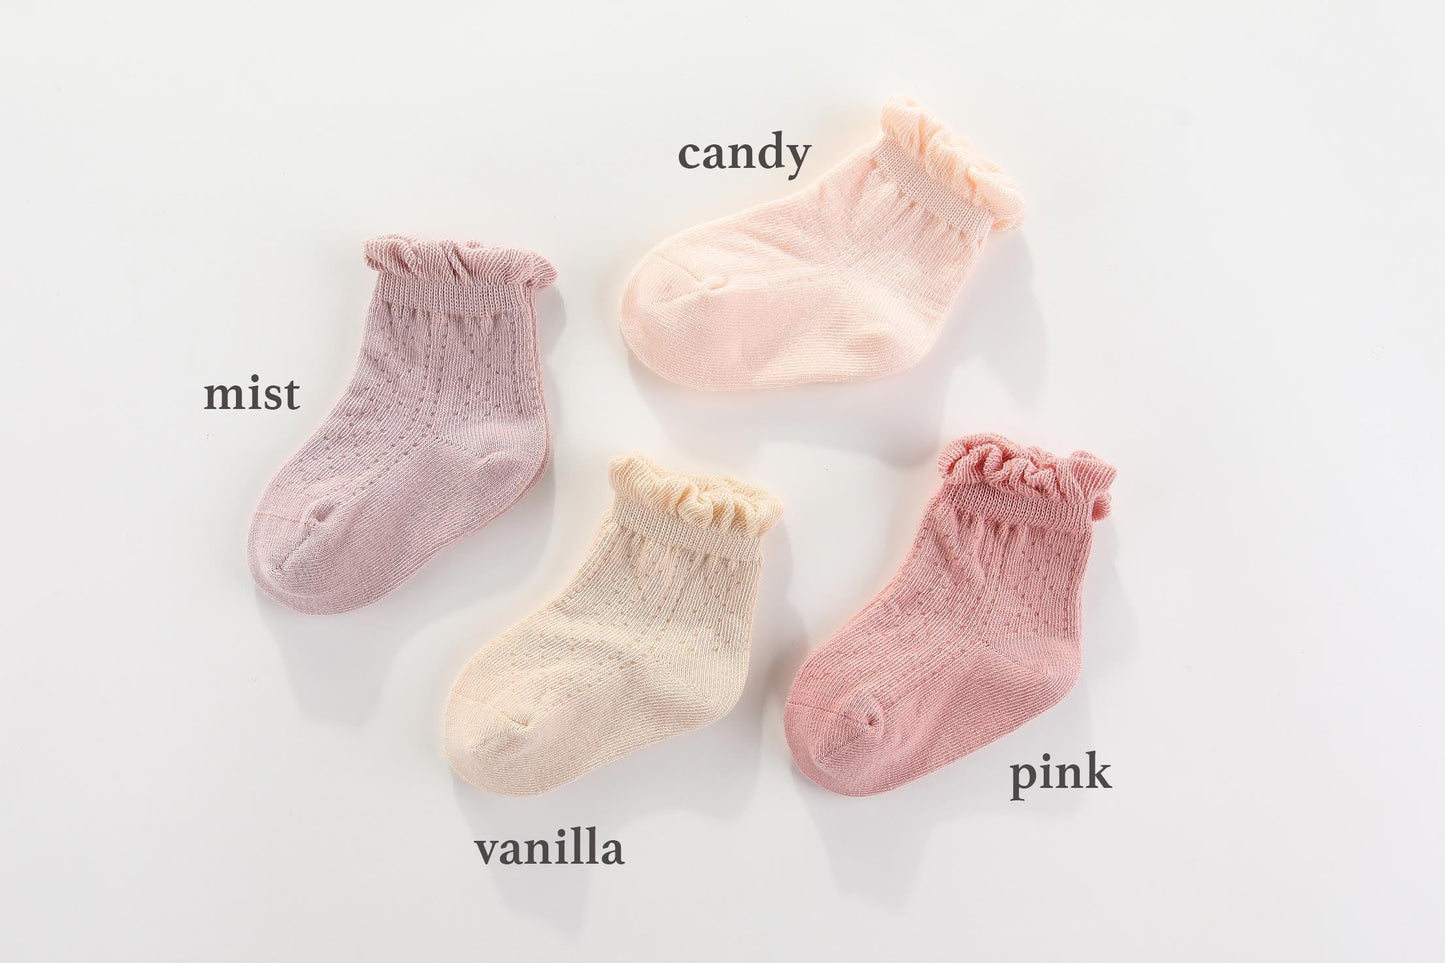 maMer Frilly Crew Socks 2 packs  - White & Pink